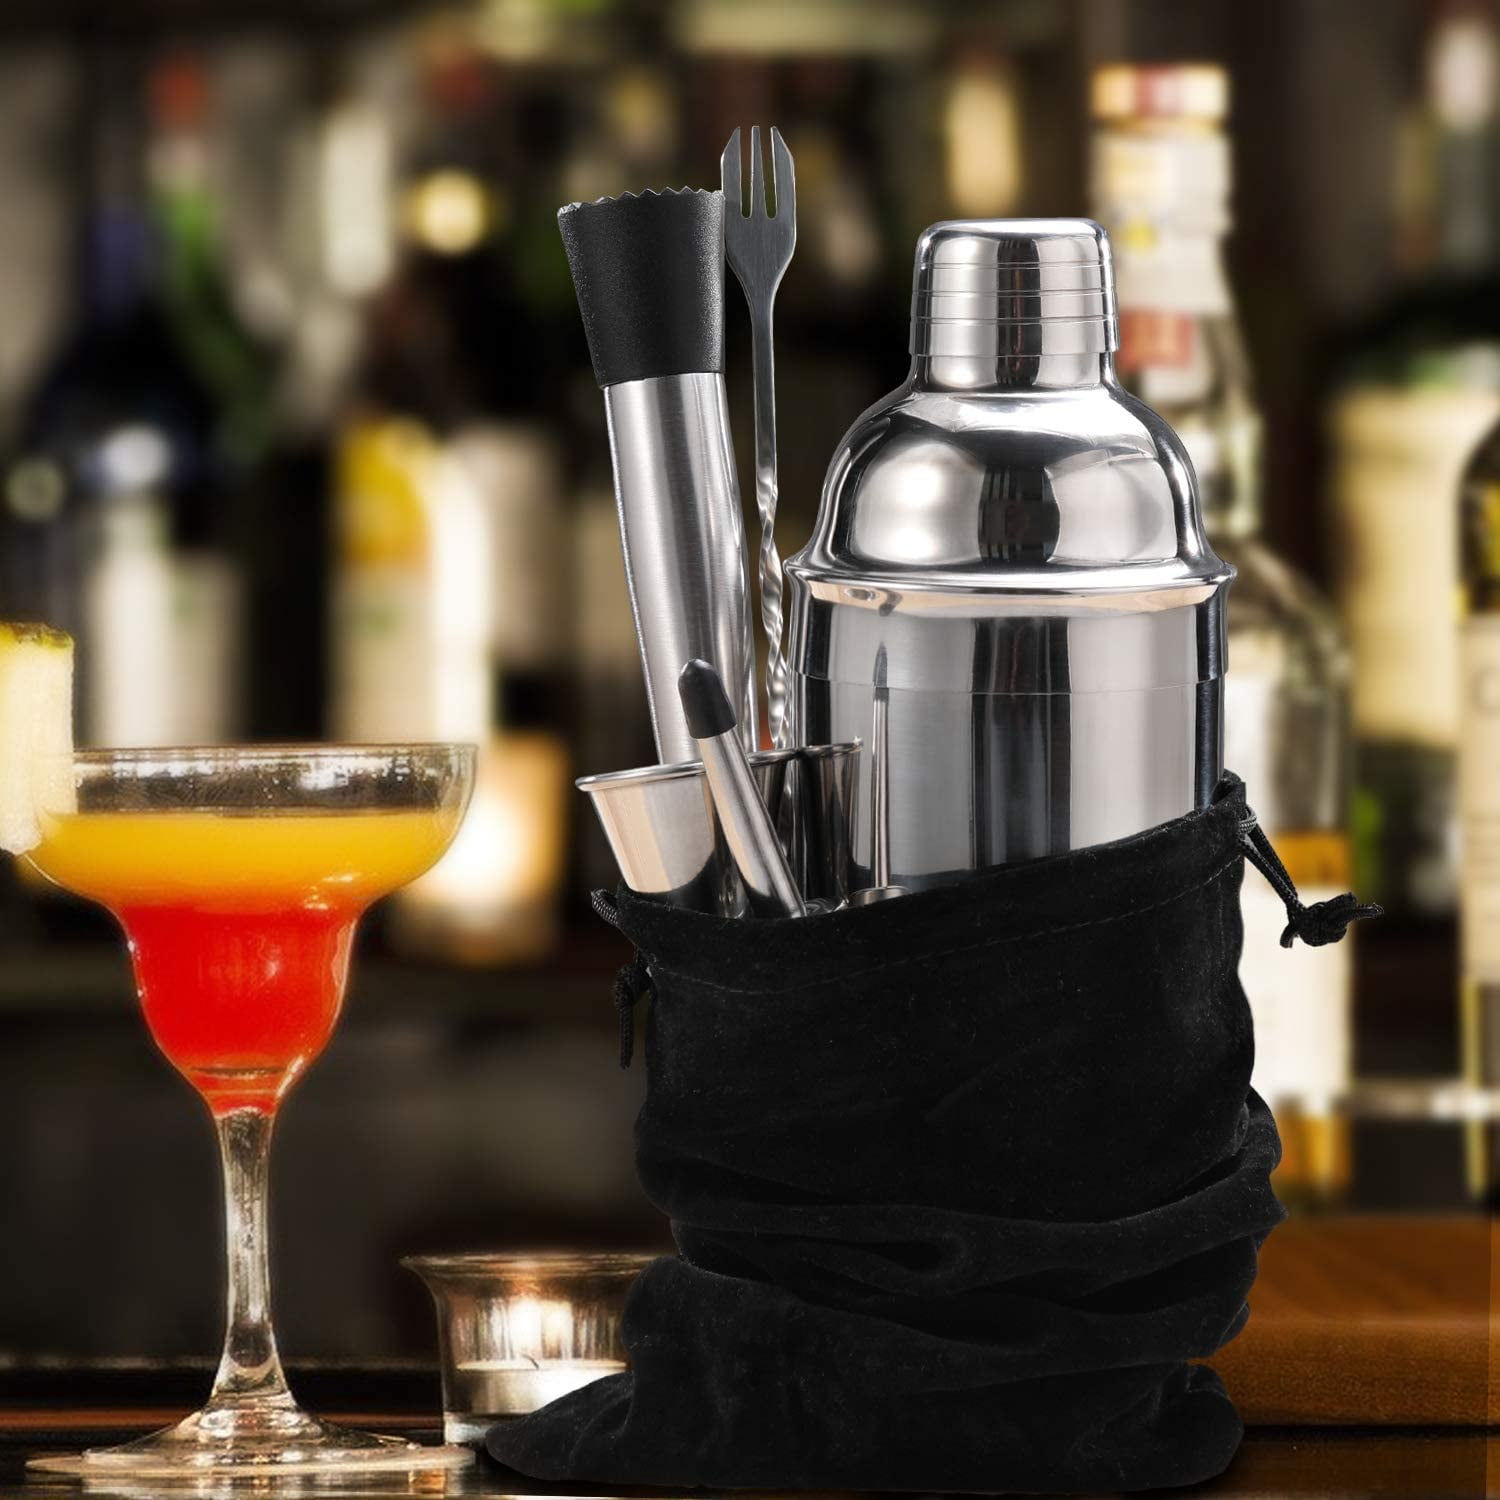 LUCKYGOOBO Cocktail Shaker,24 oz Martini Shaker,Drink Shaker Built-in  Strainer,Professional Stainless Steel Margarita Mixer,Bartender Kit Gifts.